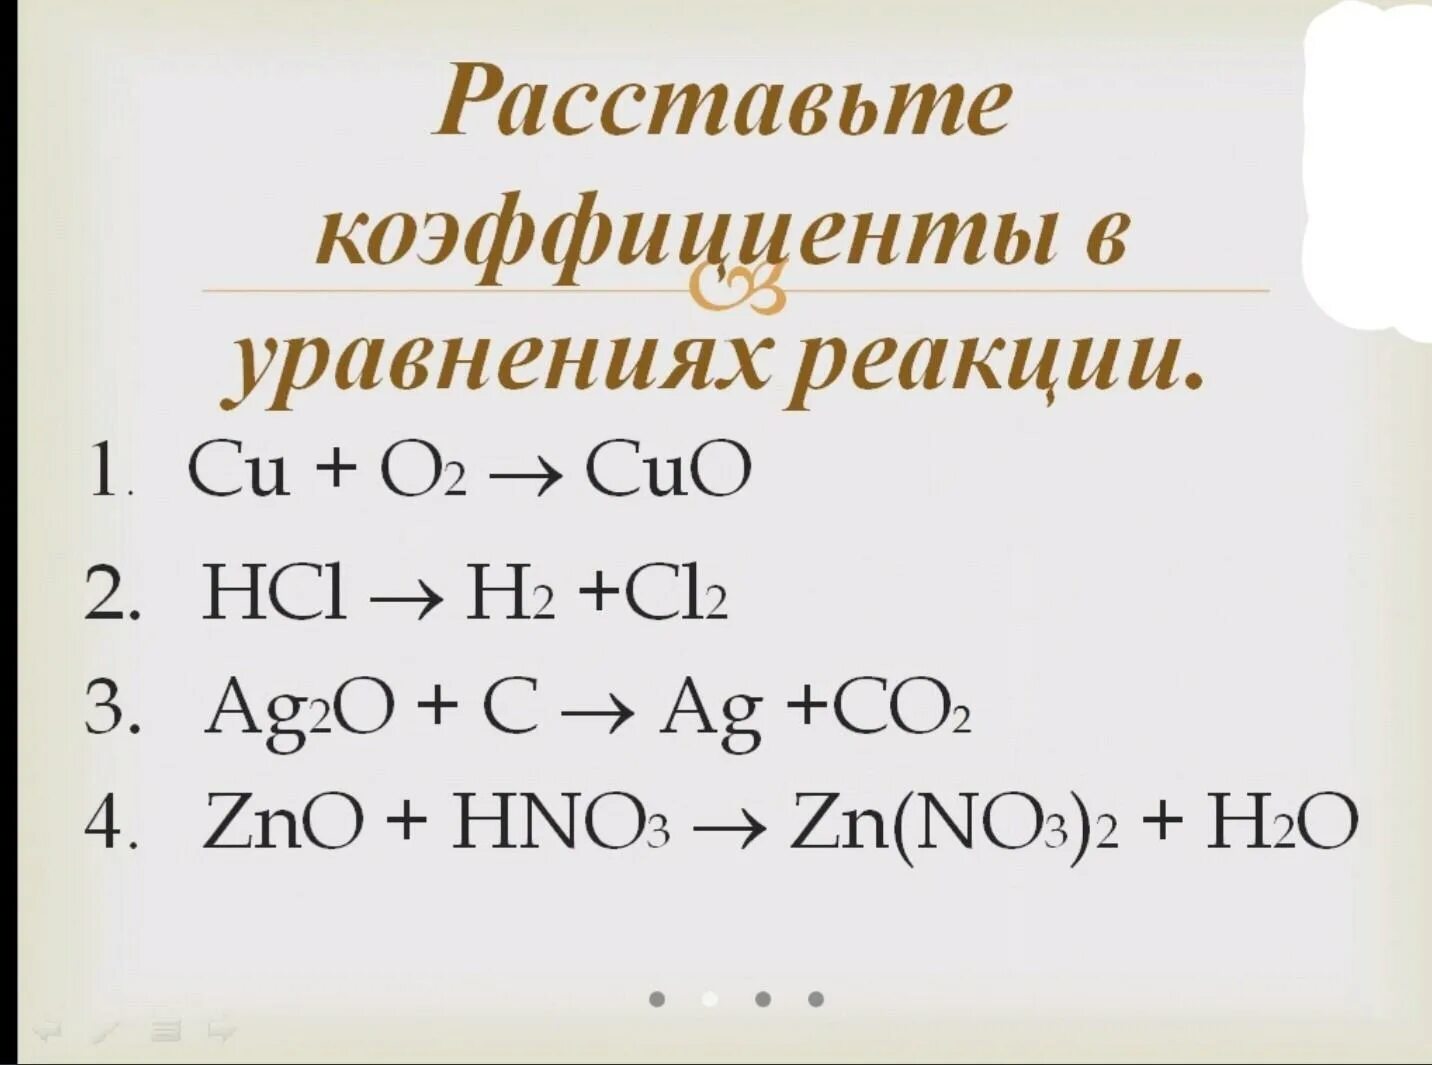 Hno3 k zn. Задание на расстановку коэффициентов. Задачи на расстановку коэффициентов в химических уравнениях. Коэффициенты в уравнении реакции. Уравнения на коэффициенты по химии.